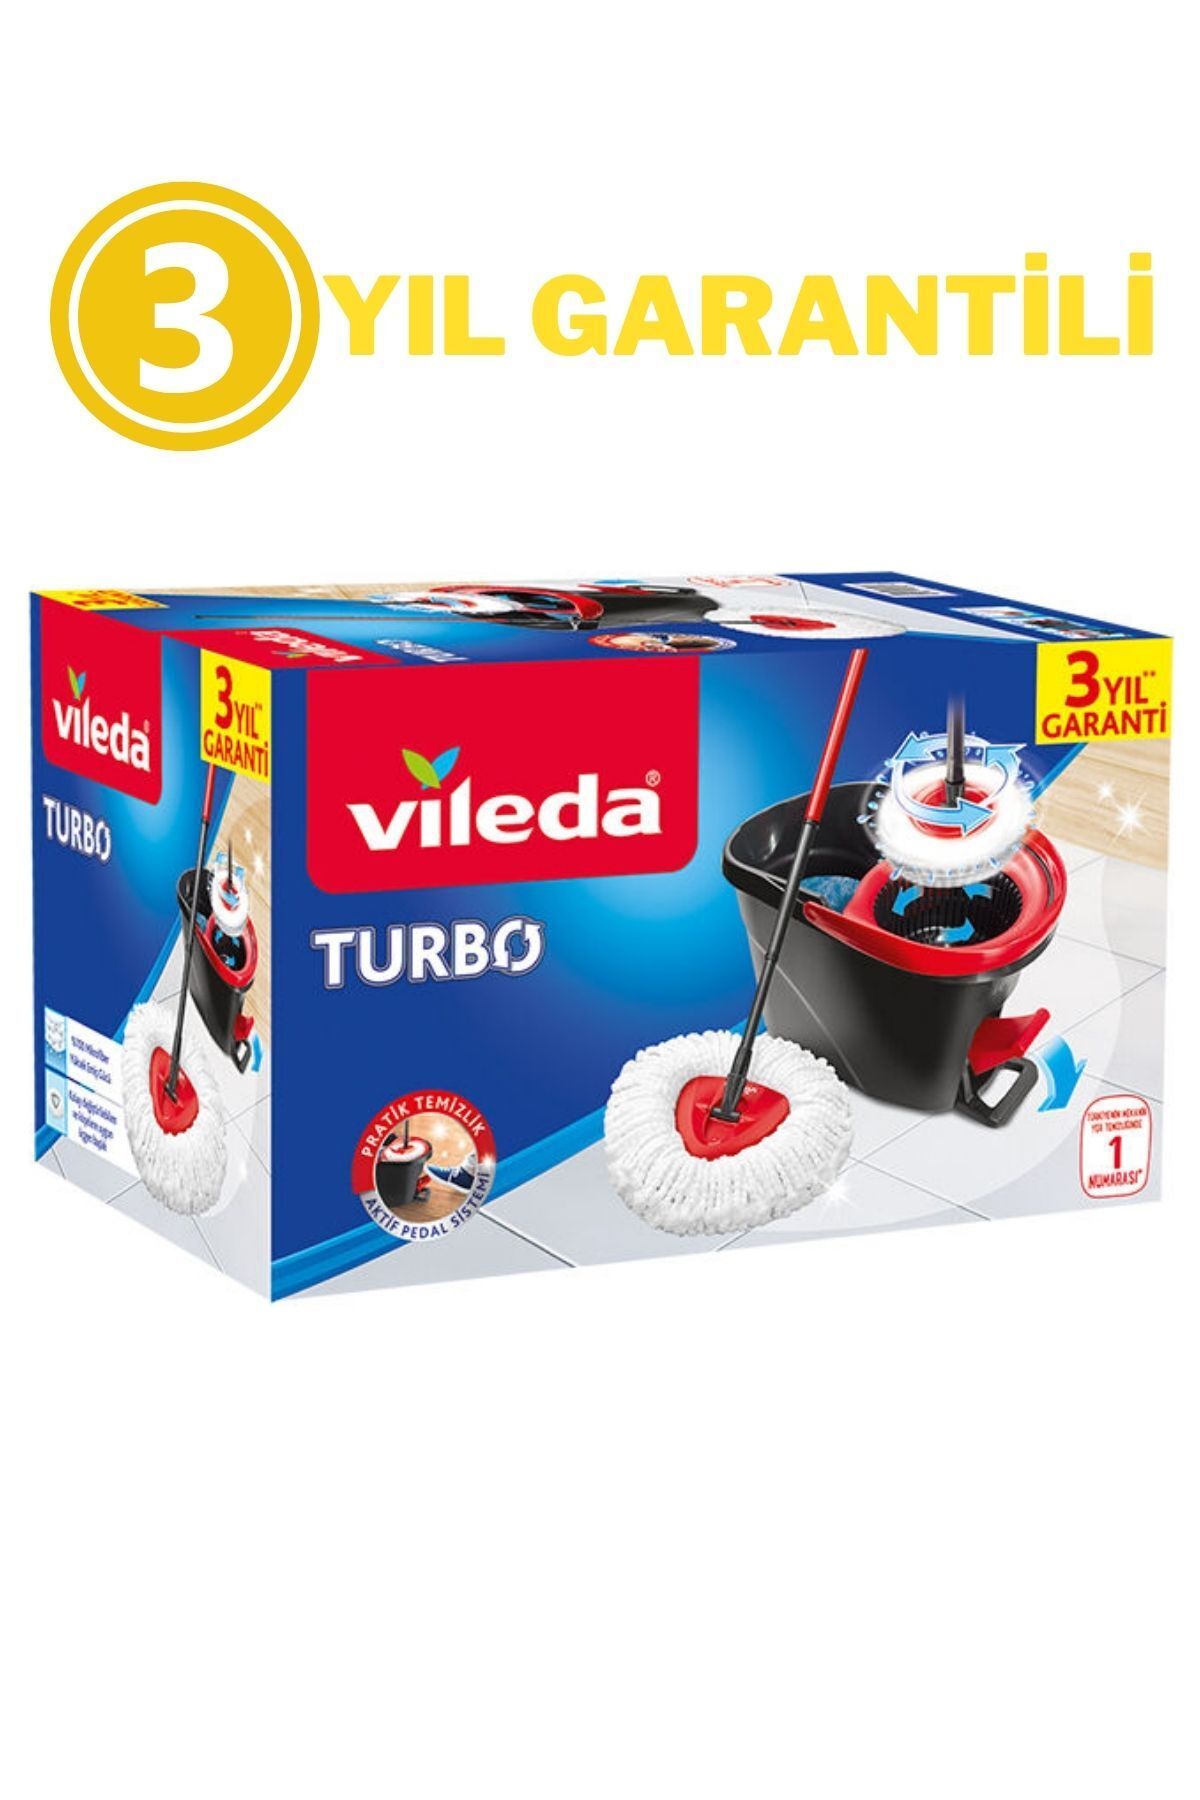 Vileda Yeni Turbo Pedallı Temizlik Sistemi 3 Yıl Garantili